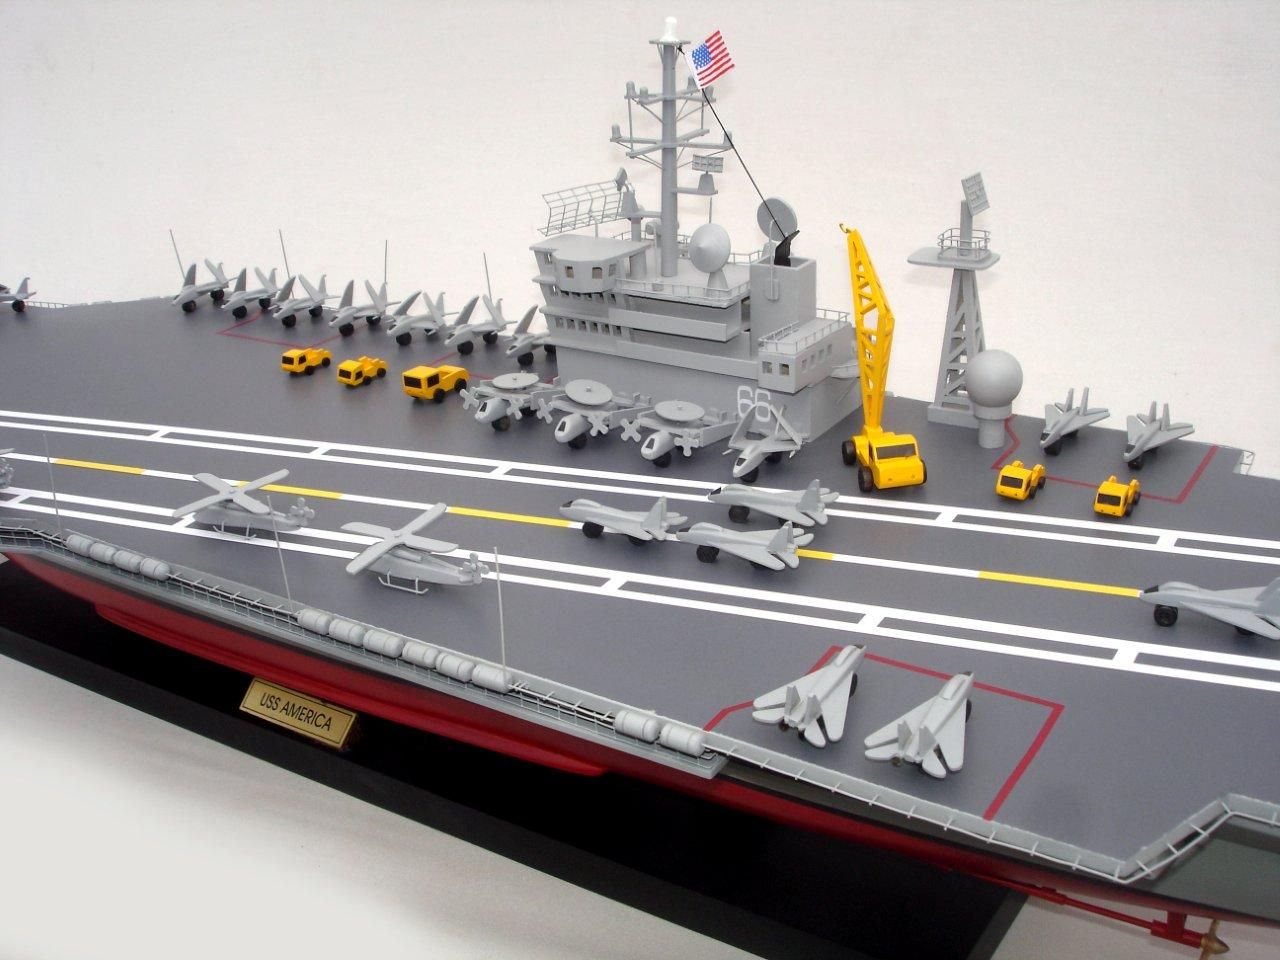 aircraft carrier uss america cv